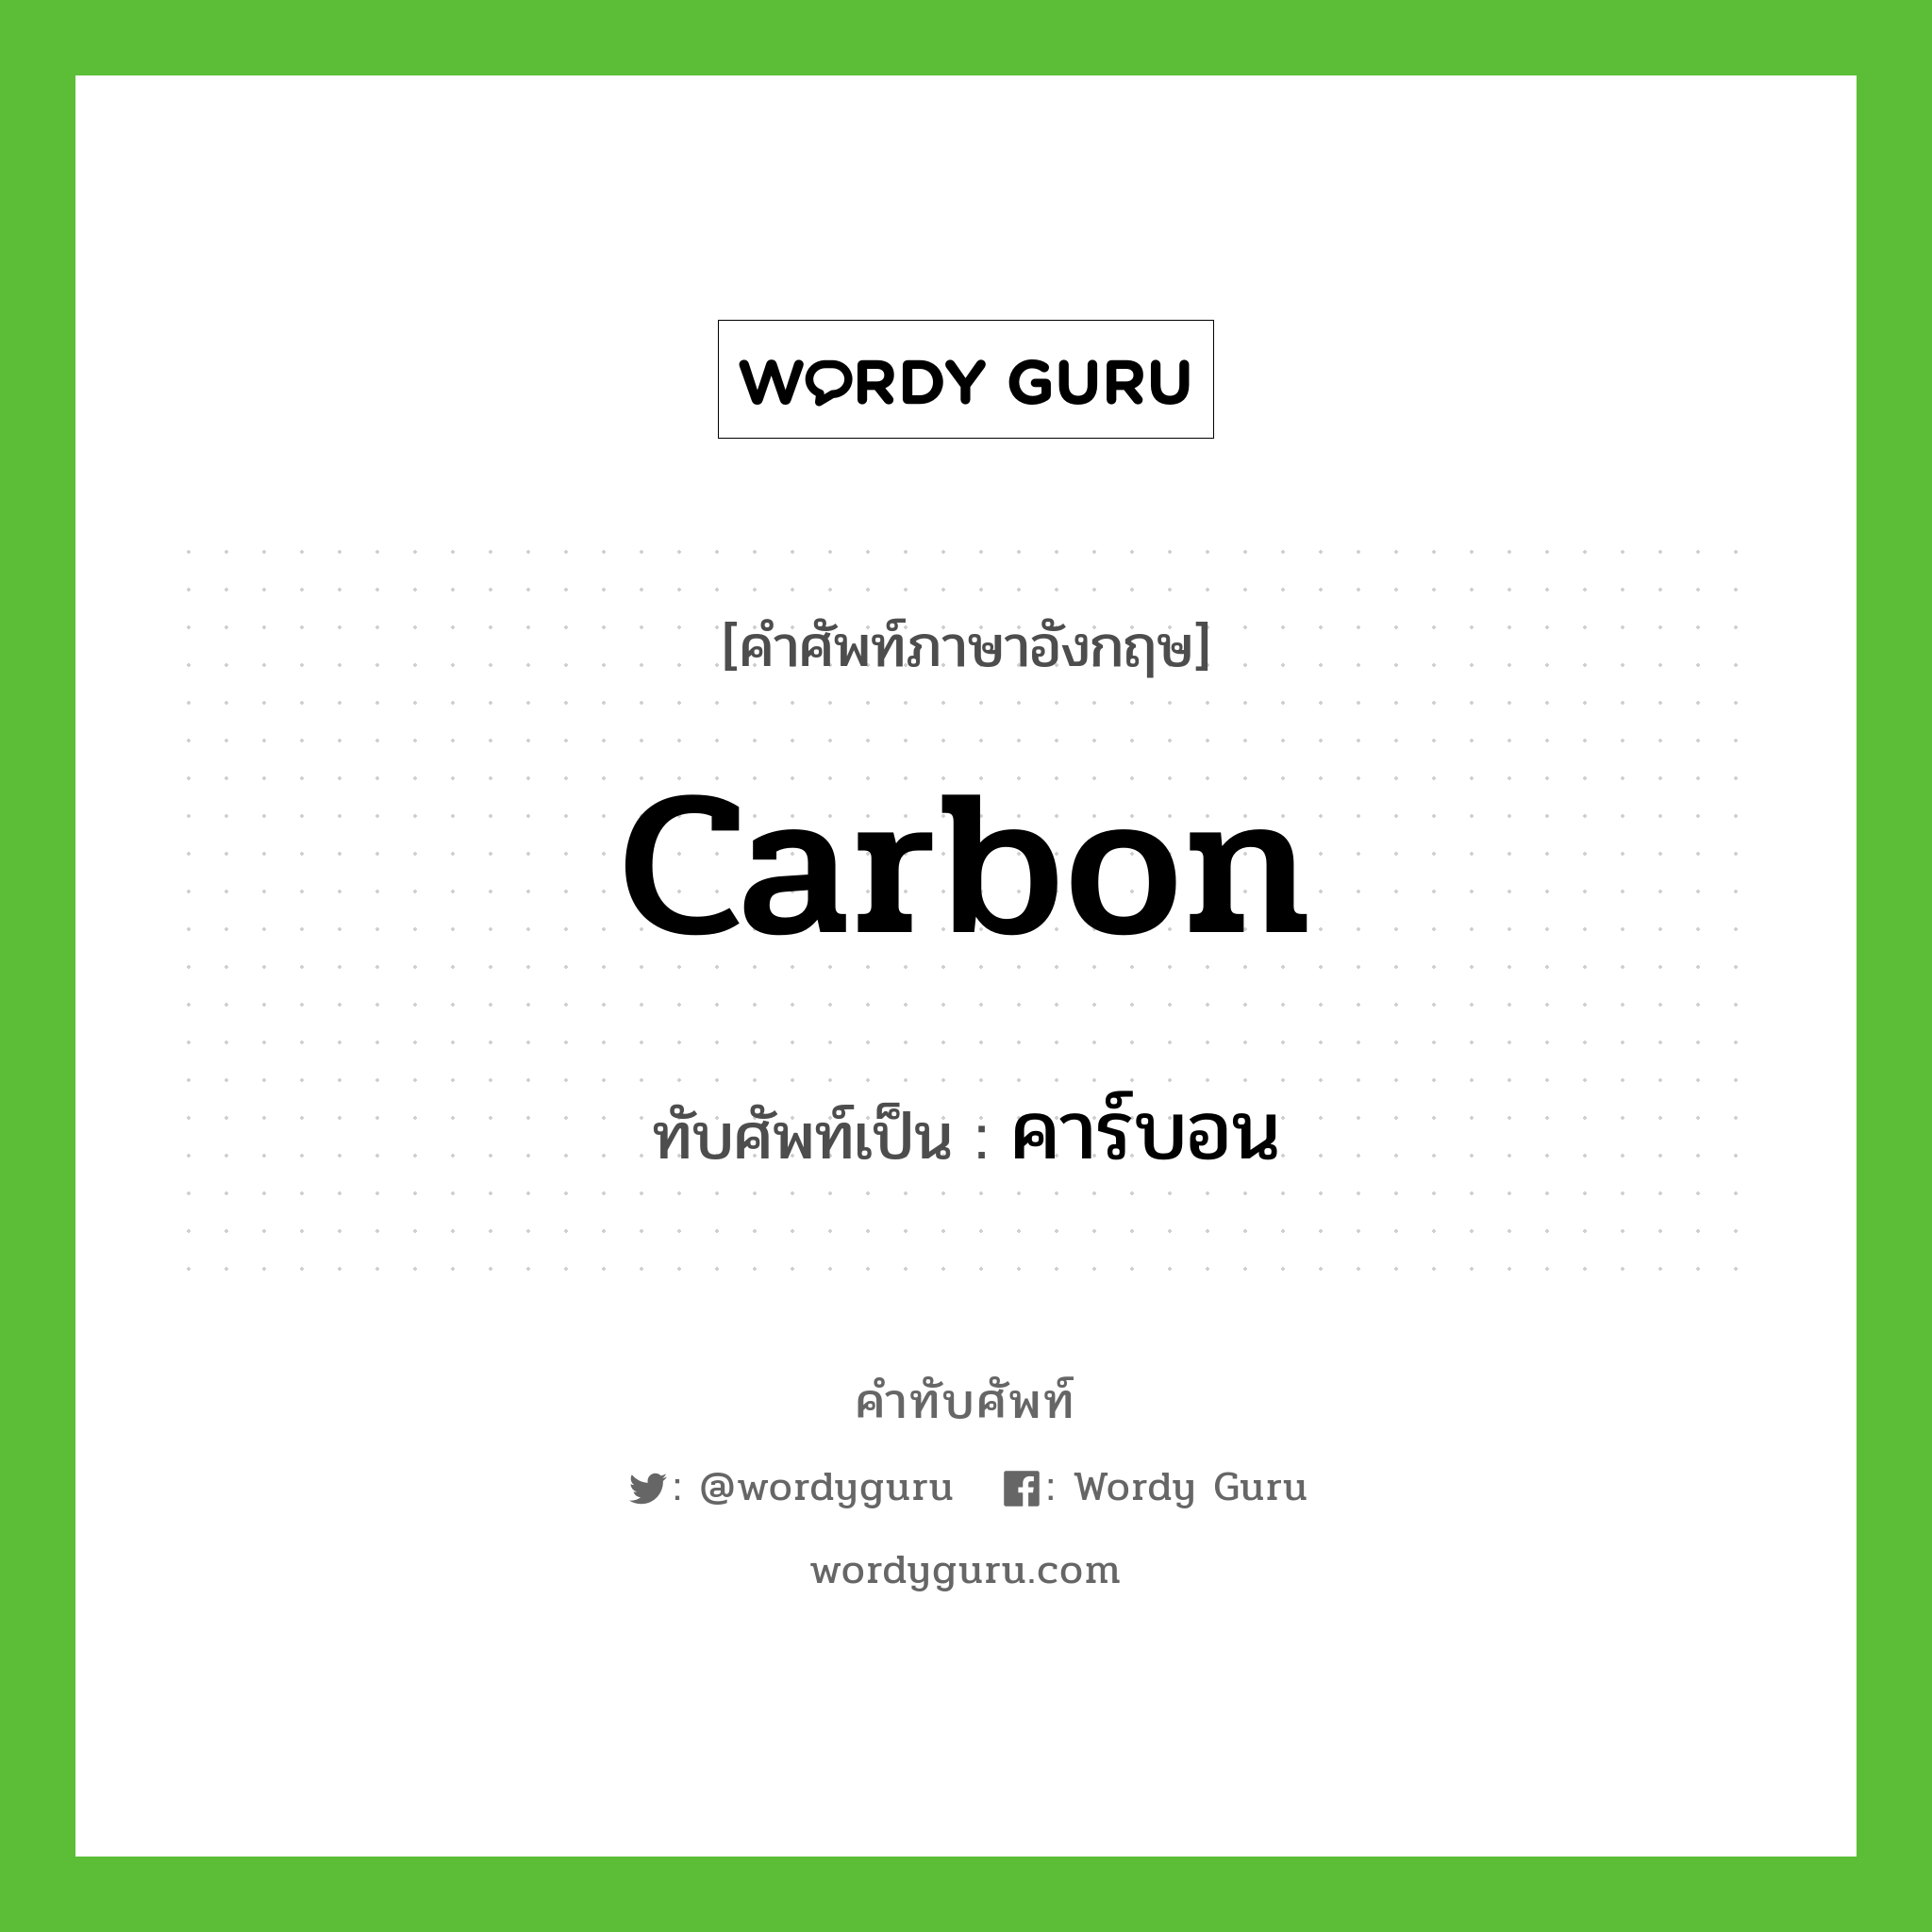 คาร์บอน เขียนอย่างไร?, คำศัพท์ภาษาอังกฤษ คาร์บอน ทับศัพท์เป็น carbon